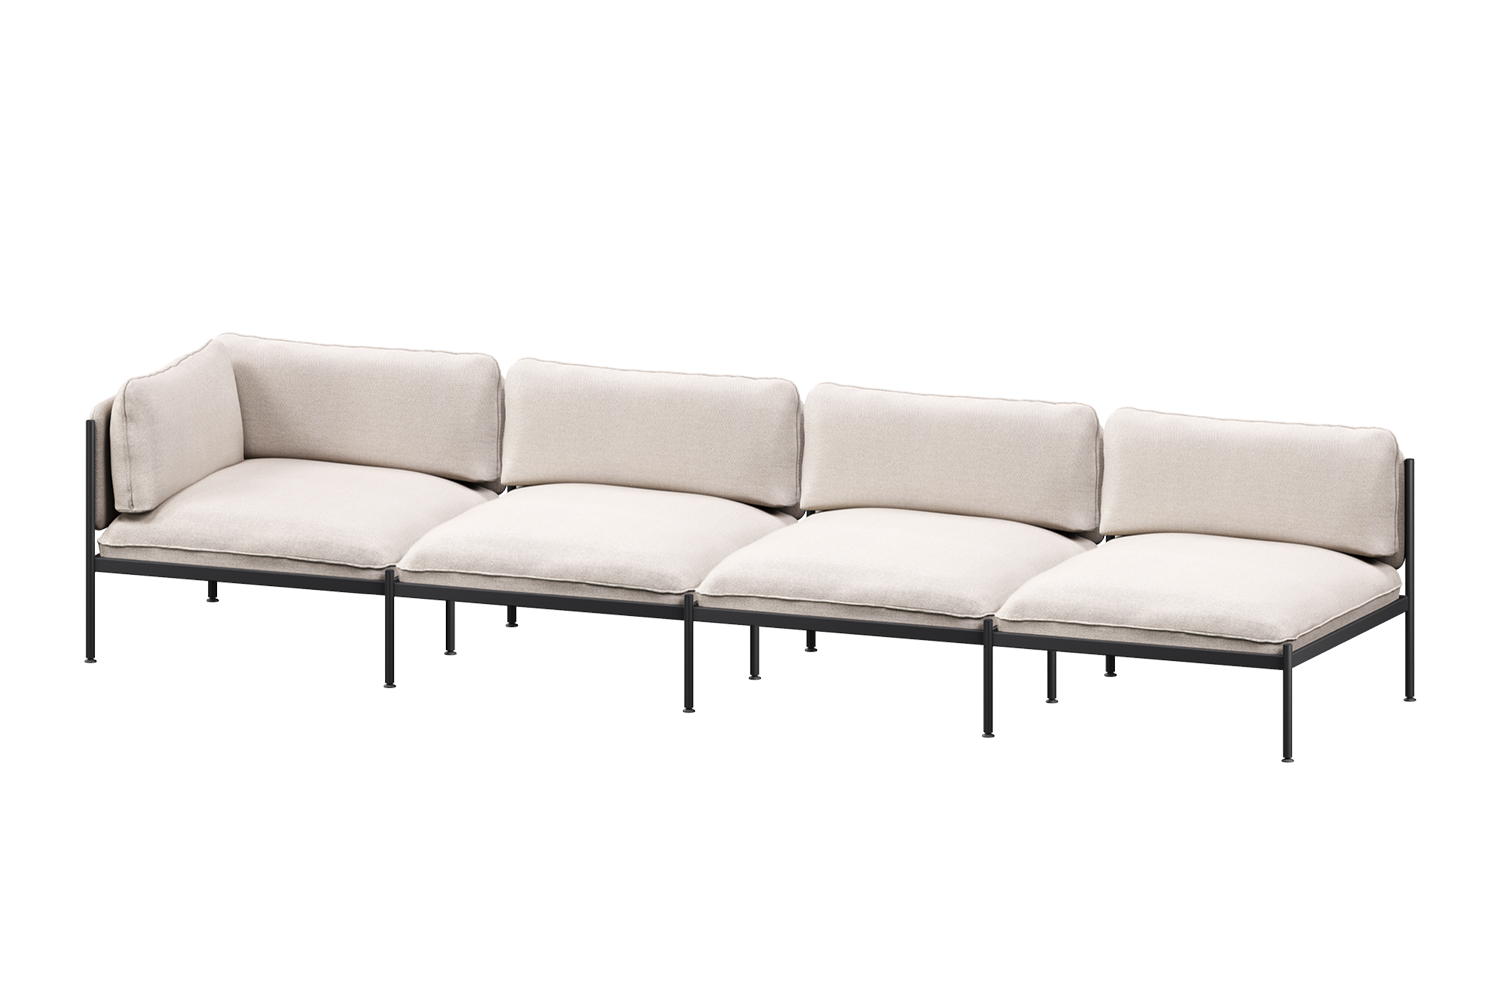 Toom Modular Sofa 4-Sitzer Konfiguration 1a in Oatmilk Beige  präsentiert im Onlineshop von KAQTU Design AG. 4er Sofa ist von Noo.ma